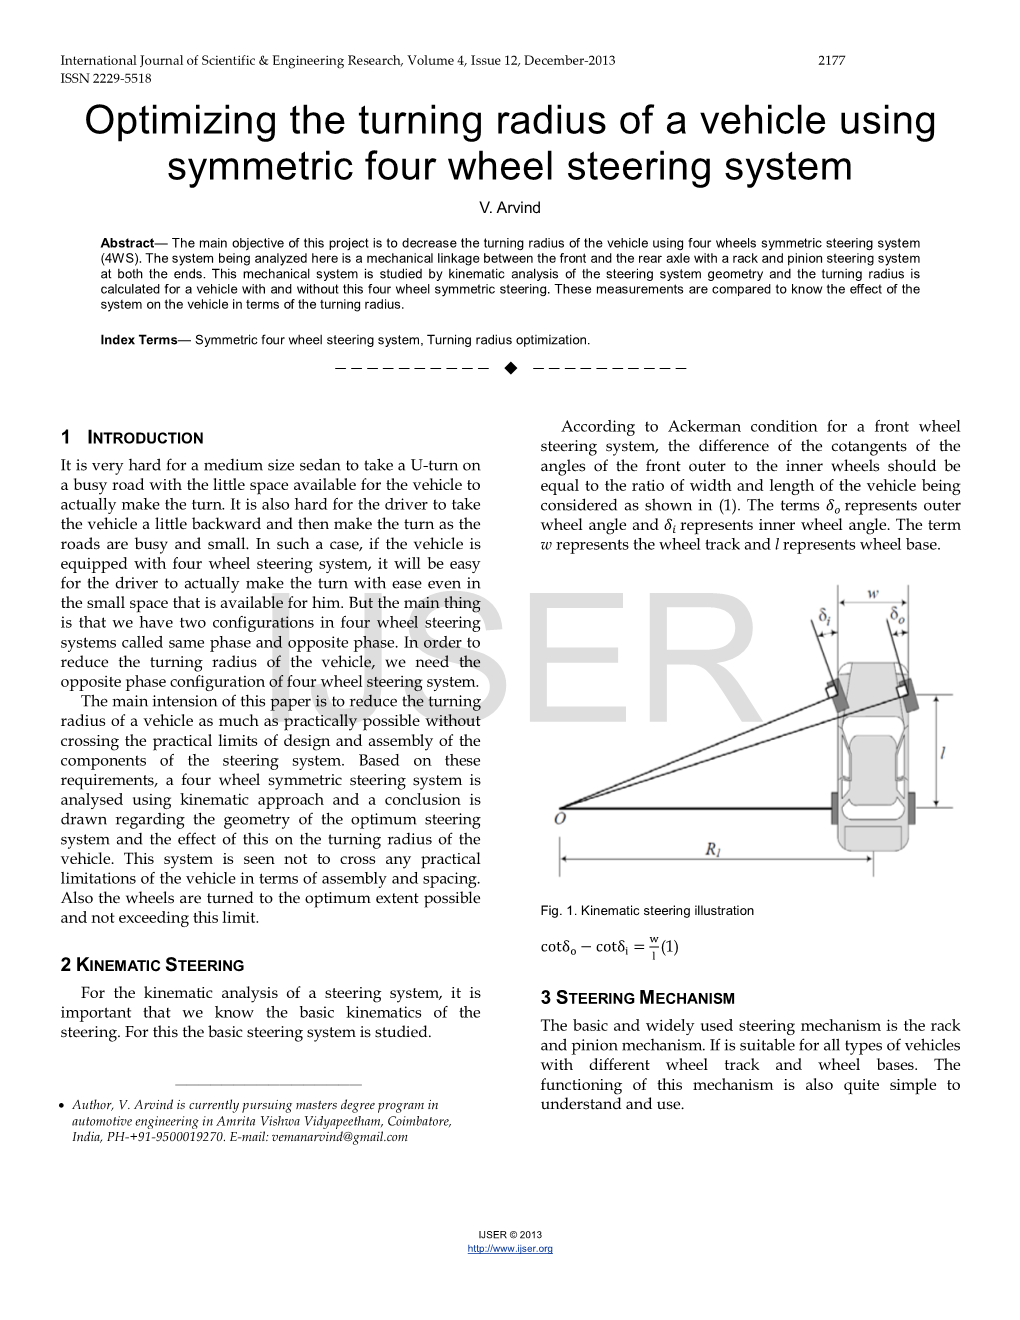 Optimizing the Turning Radius of a Vehicle Using Symmetric Four Wheel Steering System V